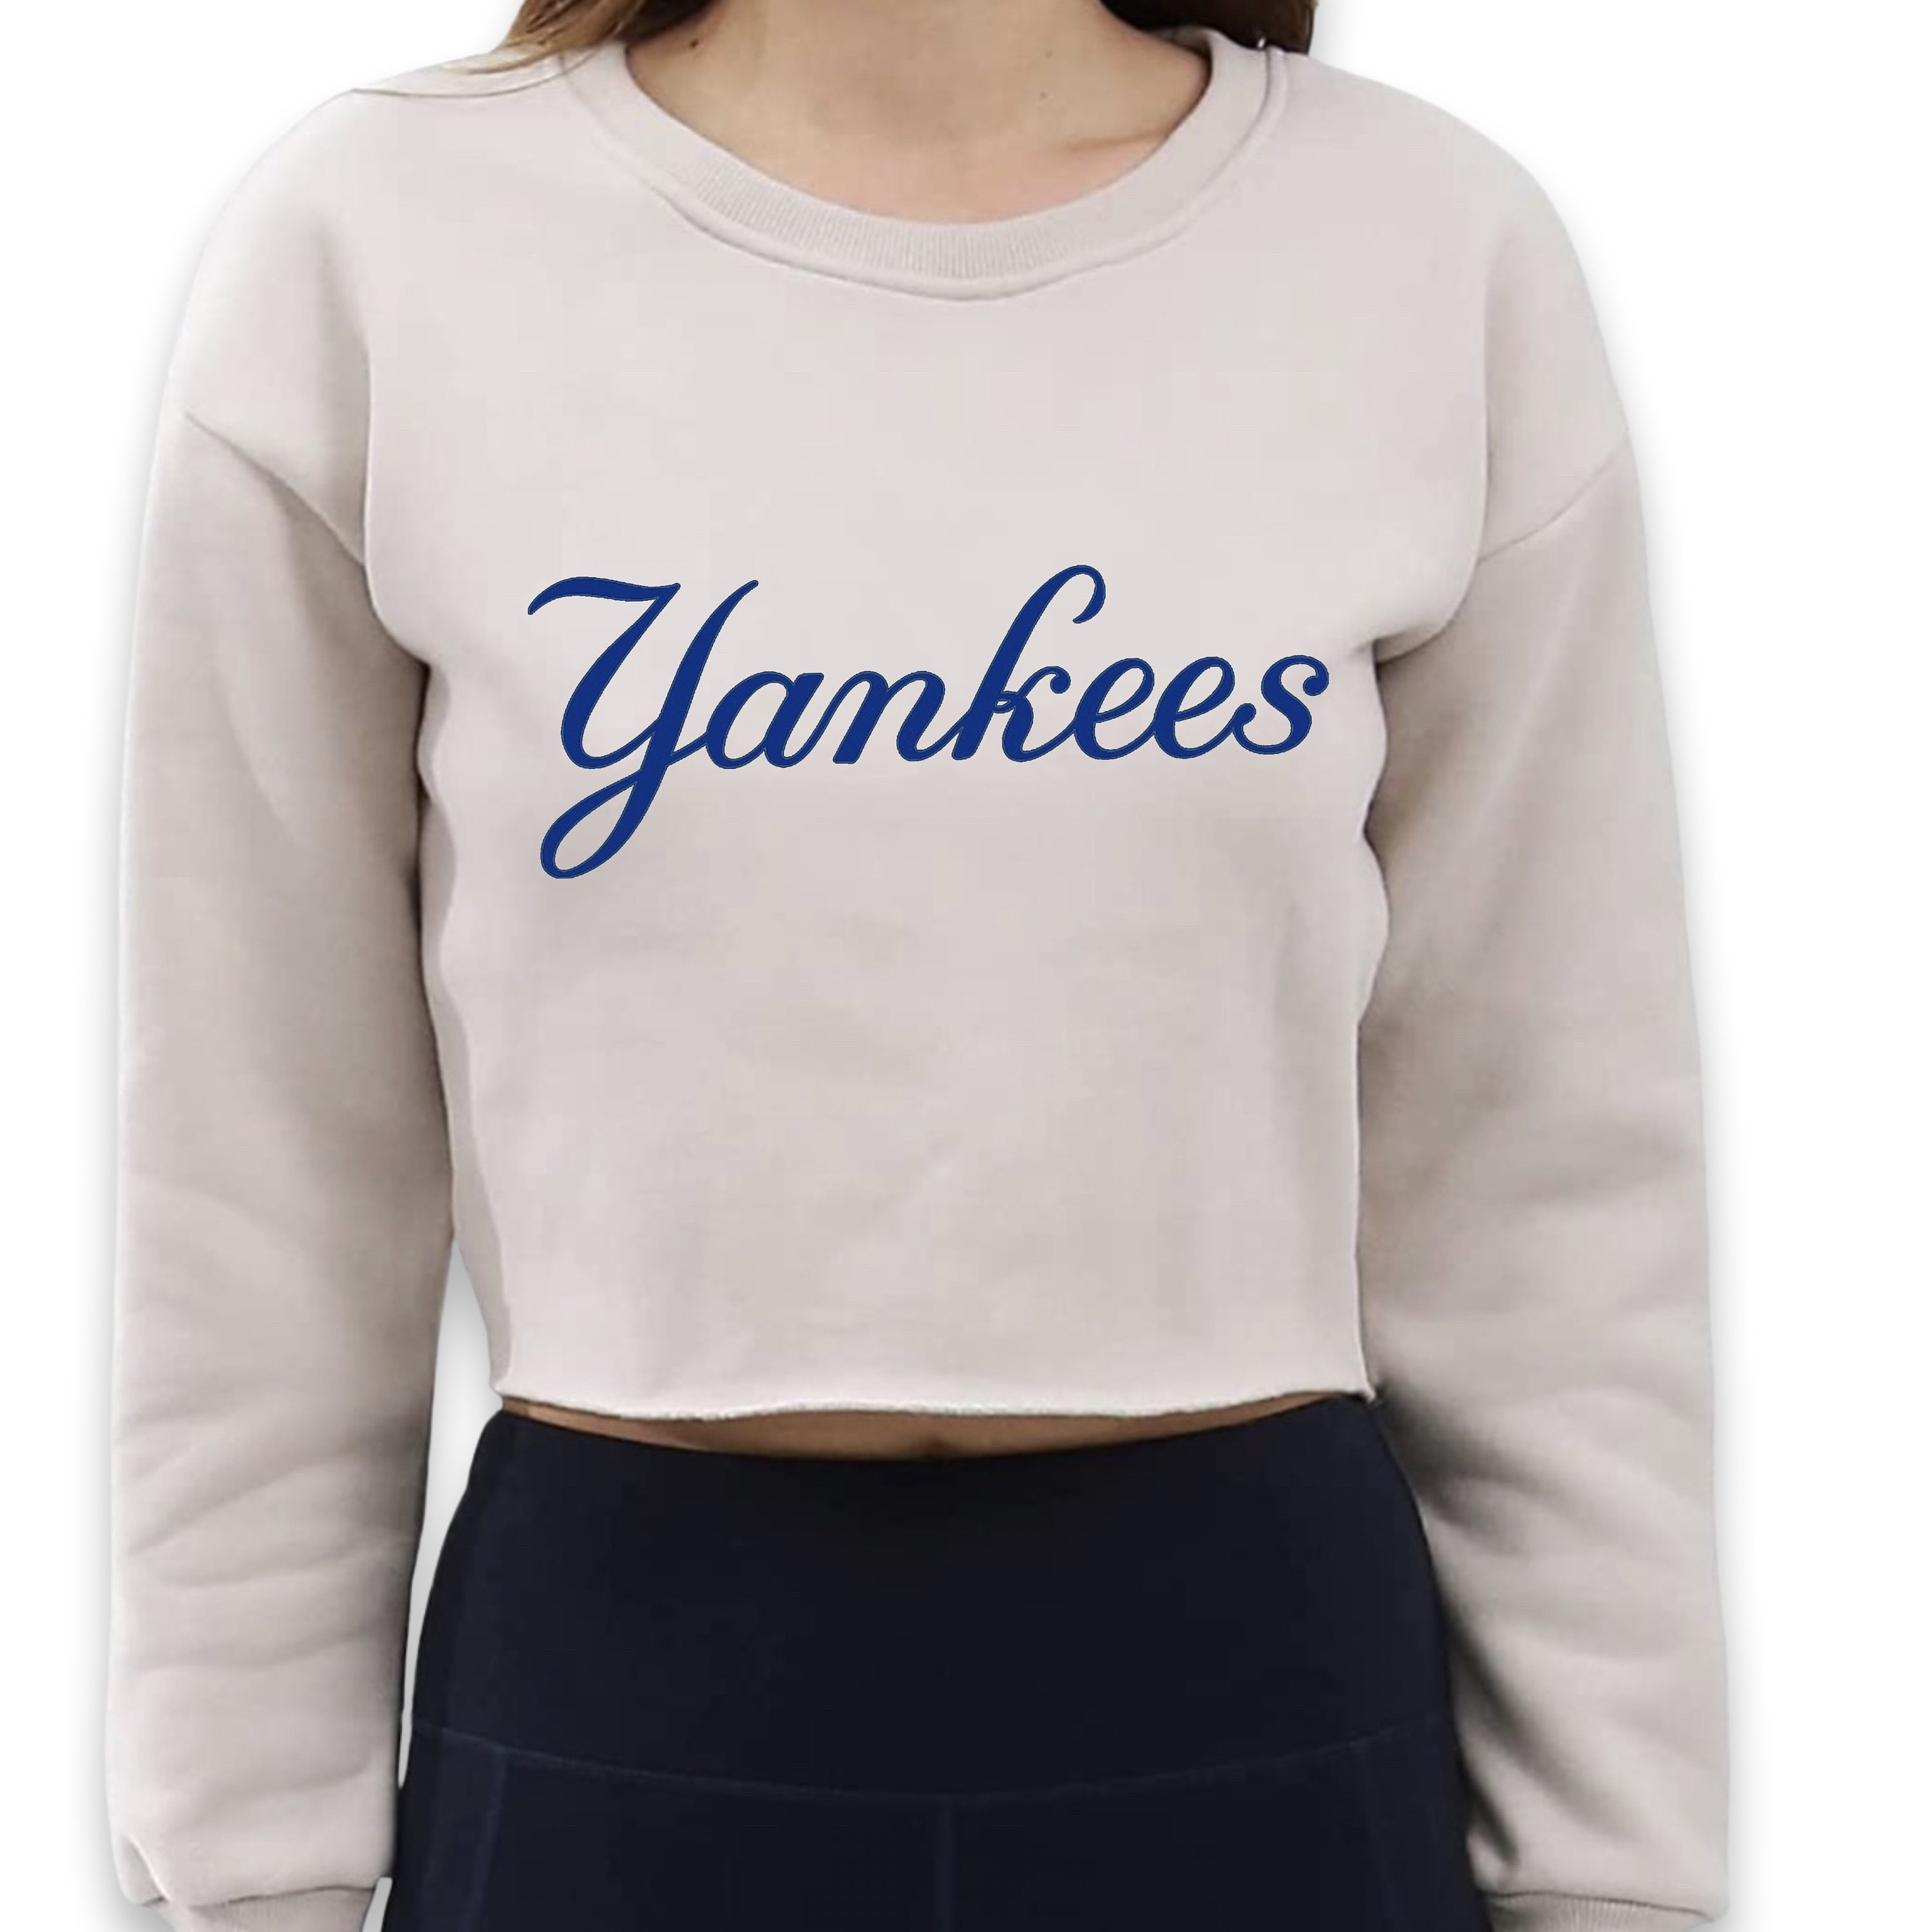 Men's yankees just hate us nike shirt, hoodie, sweater, long sleeve and  tank top